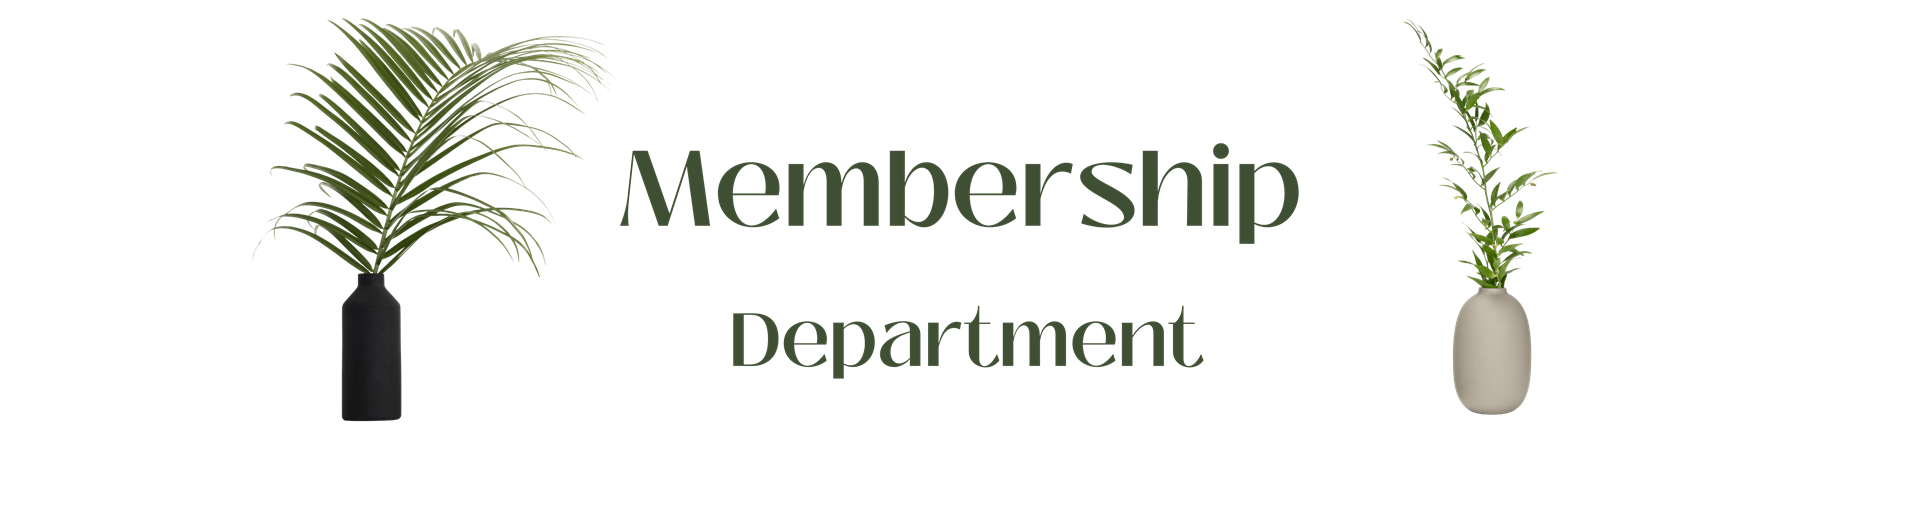 Membership Department